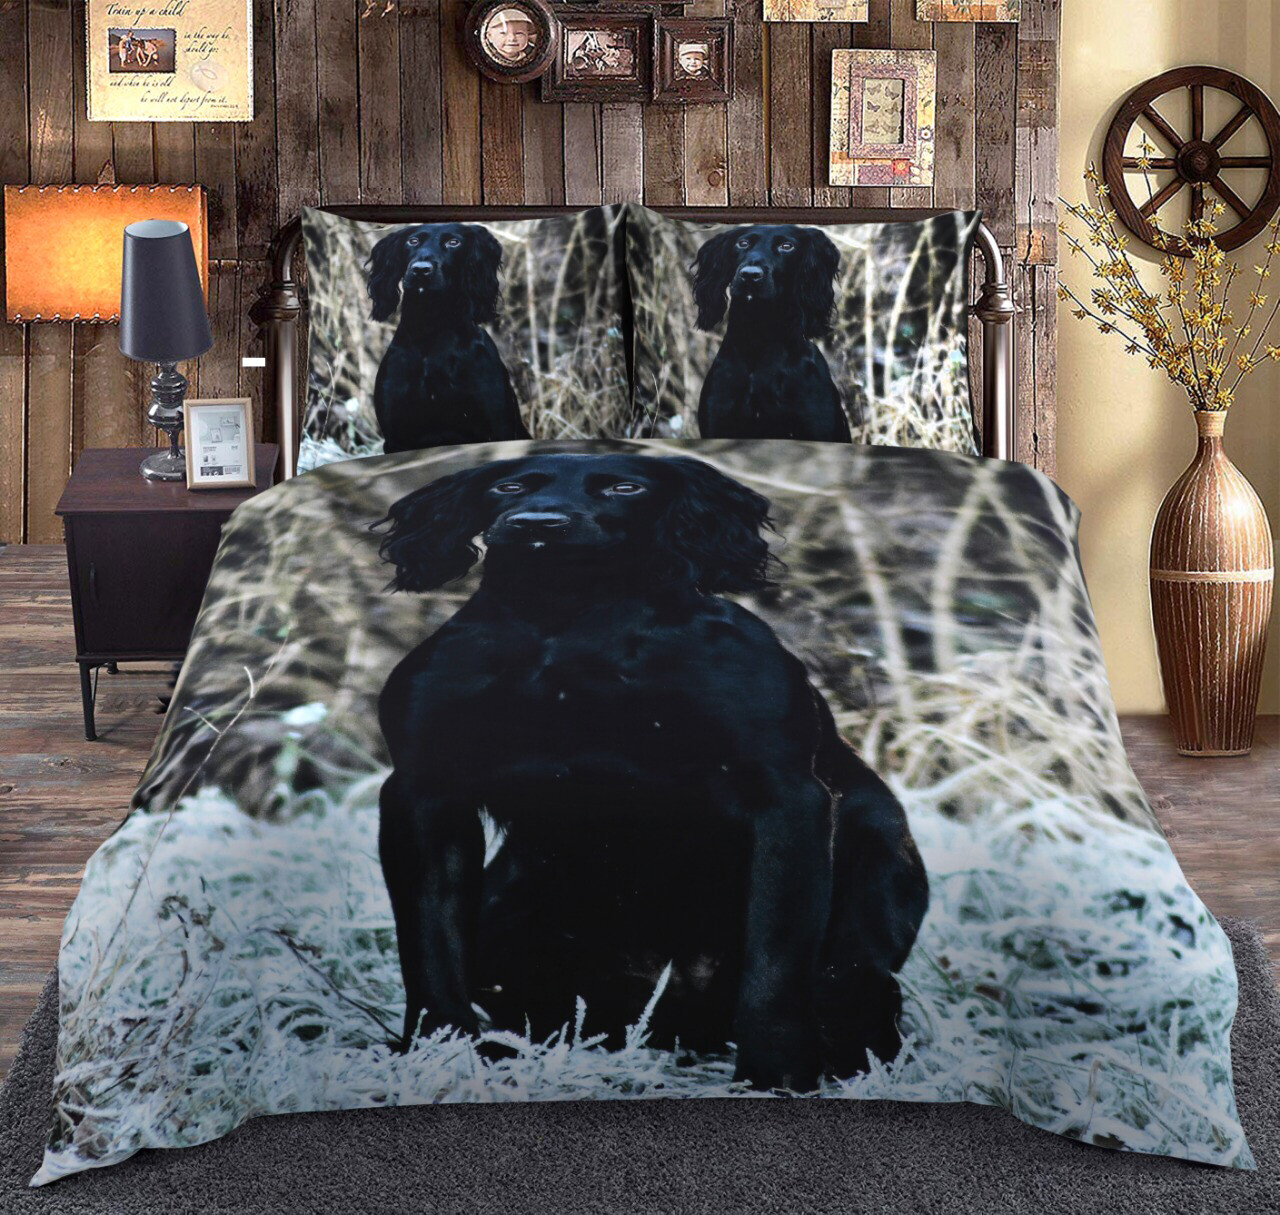 Sengetøj - Køb det sengetøj med jagt og natur print her! | De vildeste ting til jægeren, hjemmet og familien